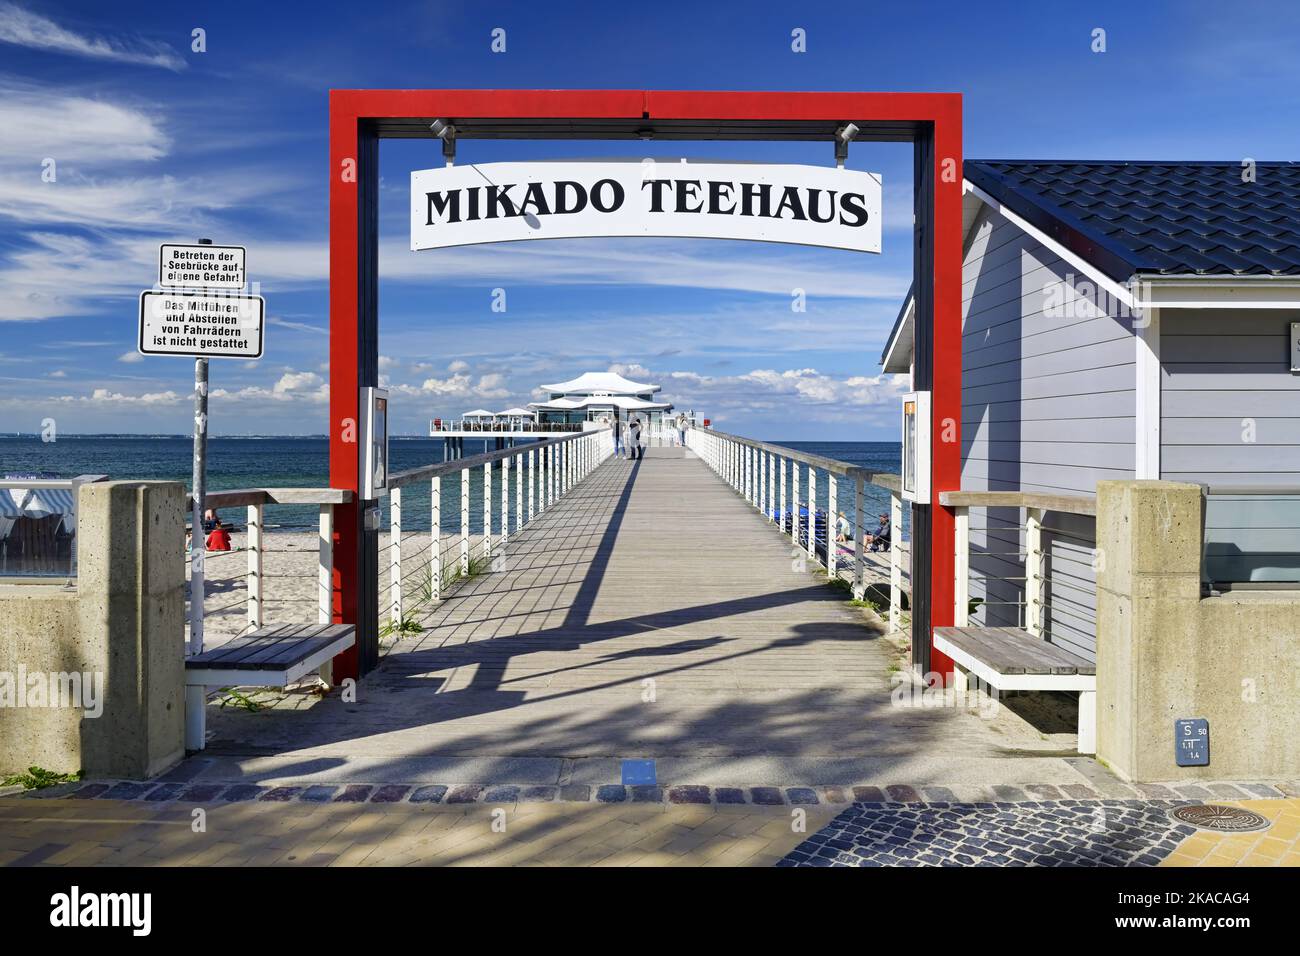 Ostsee, Seeschlösschenbrücke und Mikado-Teehaus in Timmendorfer Strand, Schleswig-Holstein, Deutschland, Europa Banque D'Images